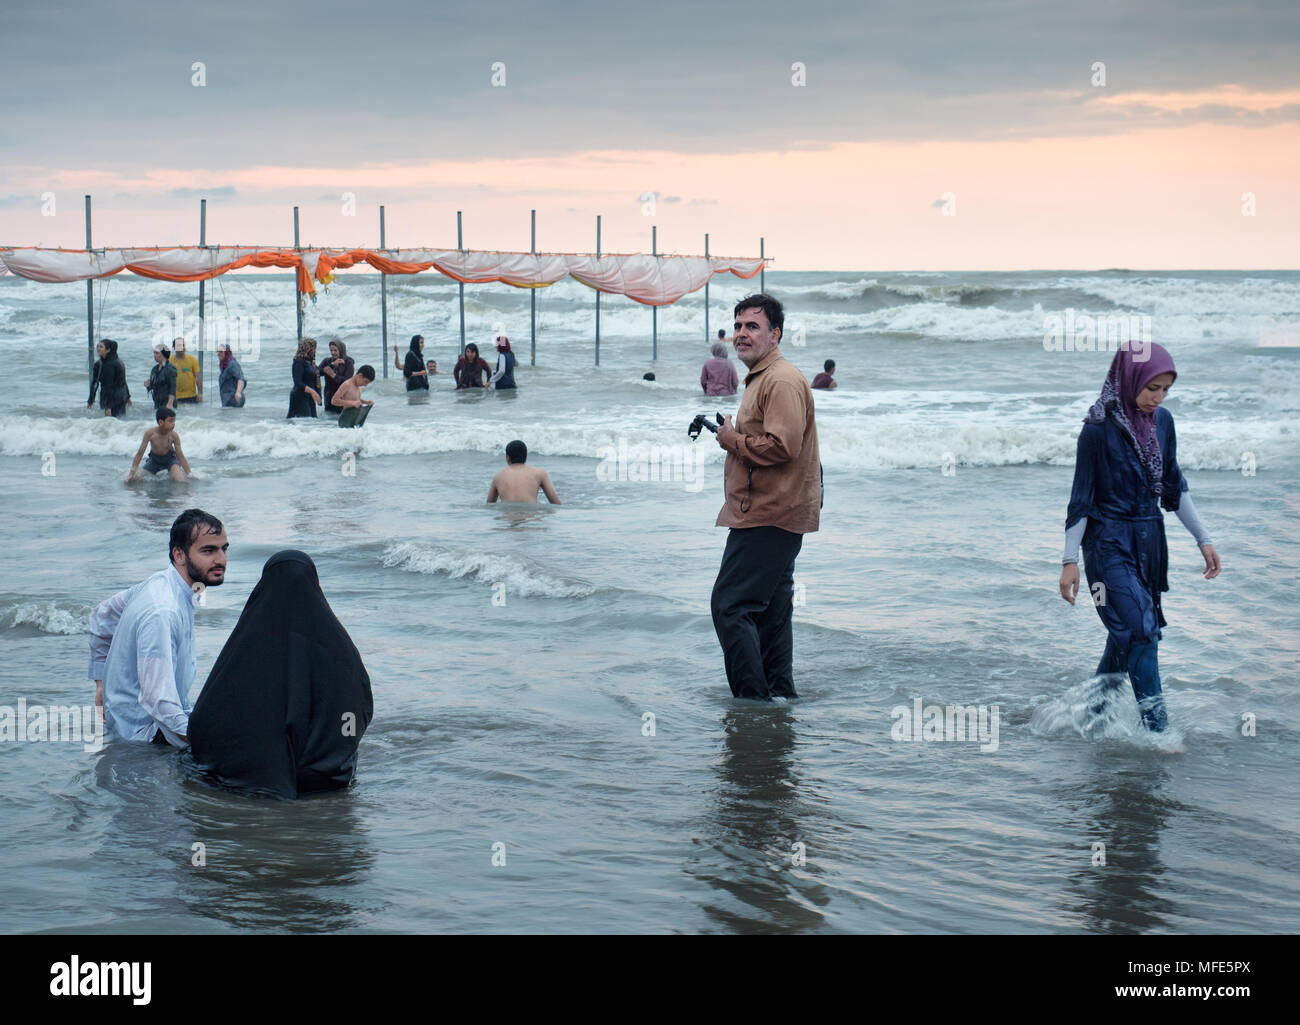 Babolsar, Iran - 23. Juli 2016: Menschen genießen Sie den Sommer Urlaub am Strand durch das Kaspische Meer bei Sonnenuntergang Stockfoto